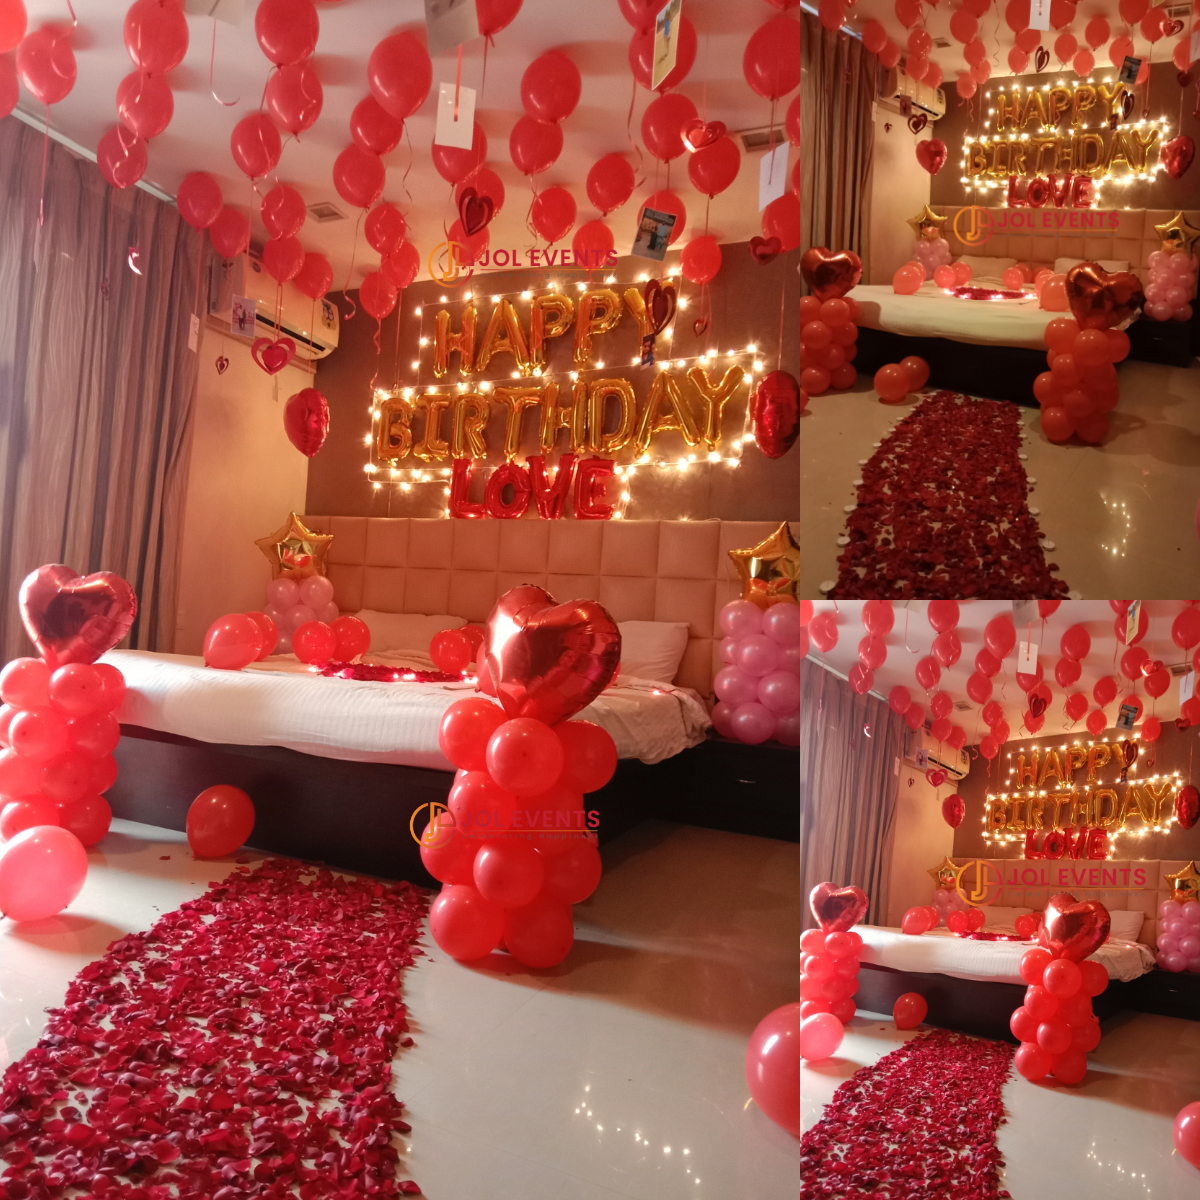 Chuẩn bị cho sinh nhật chồng với unique surprise room decoration ...